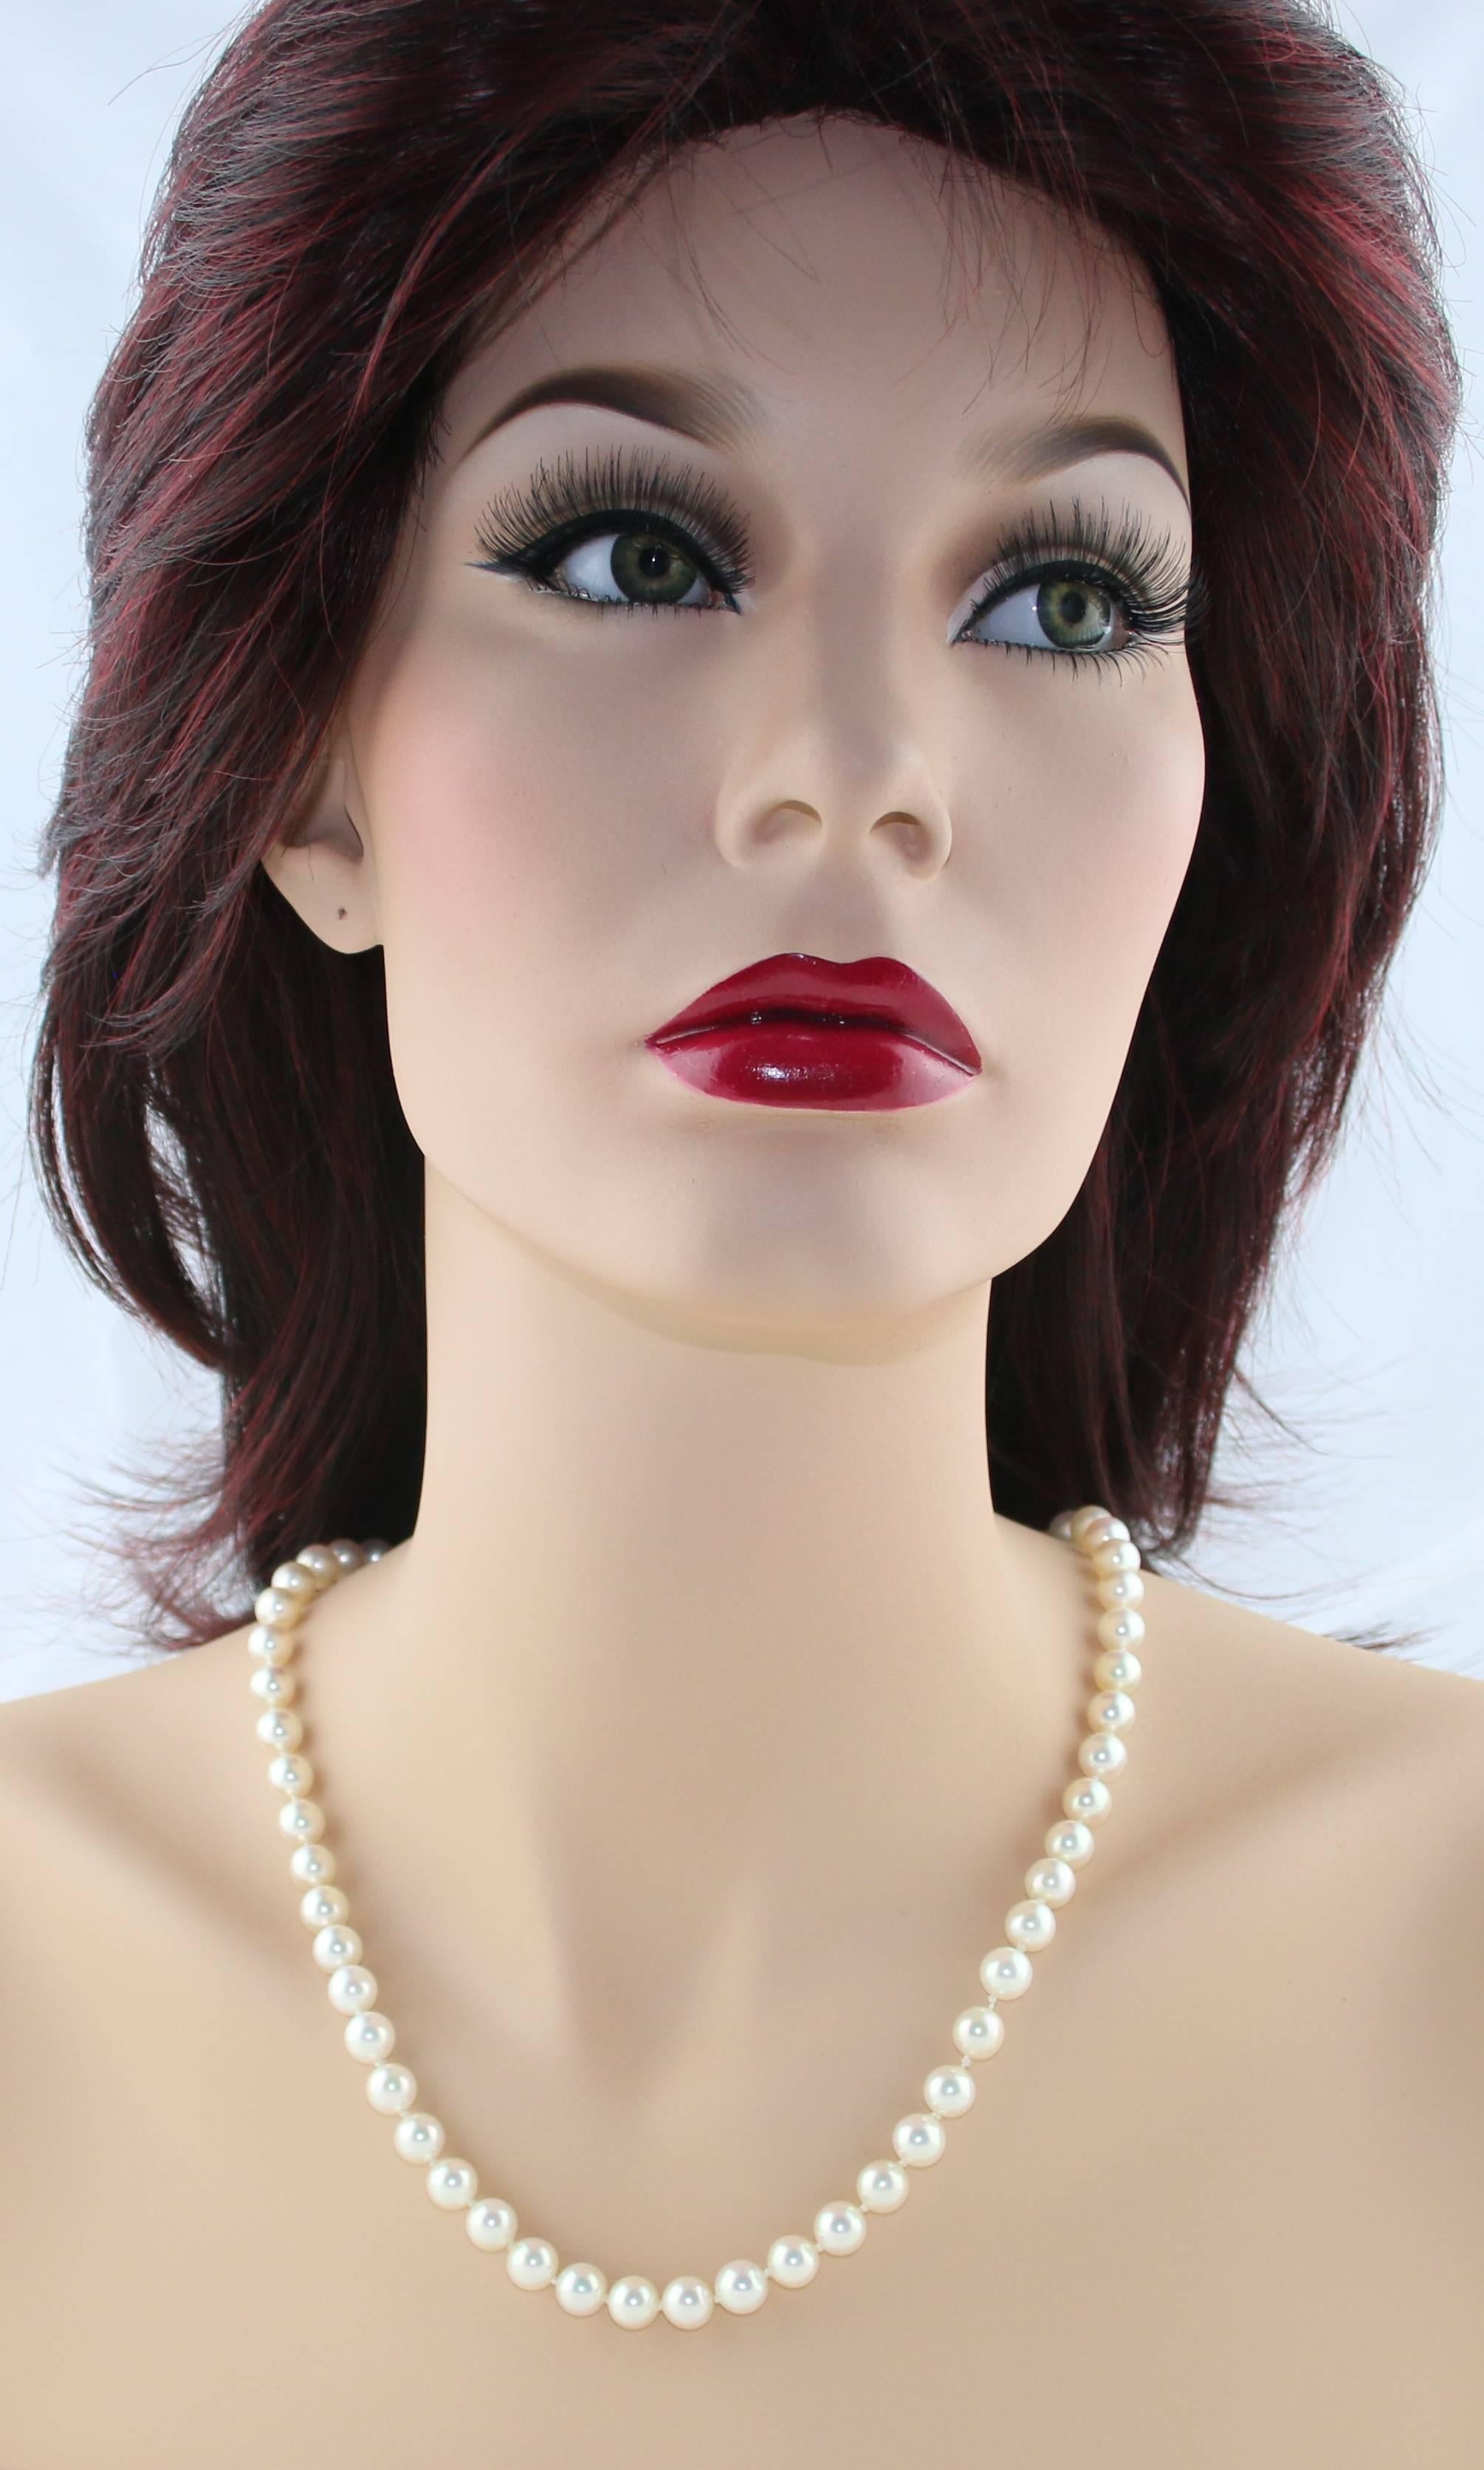 Klassische Perlenkette
Die Perlenkette ist von Tiffany & Co.
Die Schließe ist aus Platin 950
Die Perlen sind ungefähr 8.25MM.
Die Perlen sind japanische Akoya-Zuchtperlen
Die Halskette ist 23